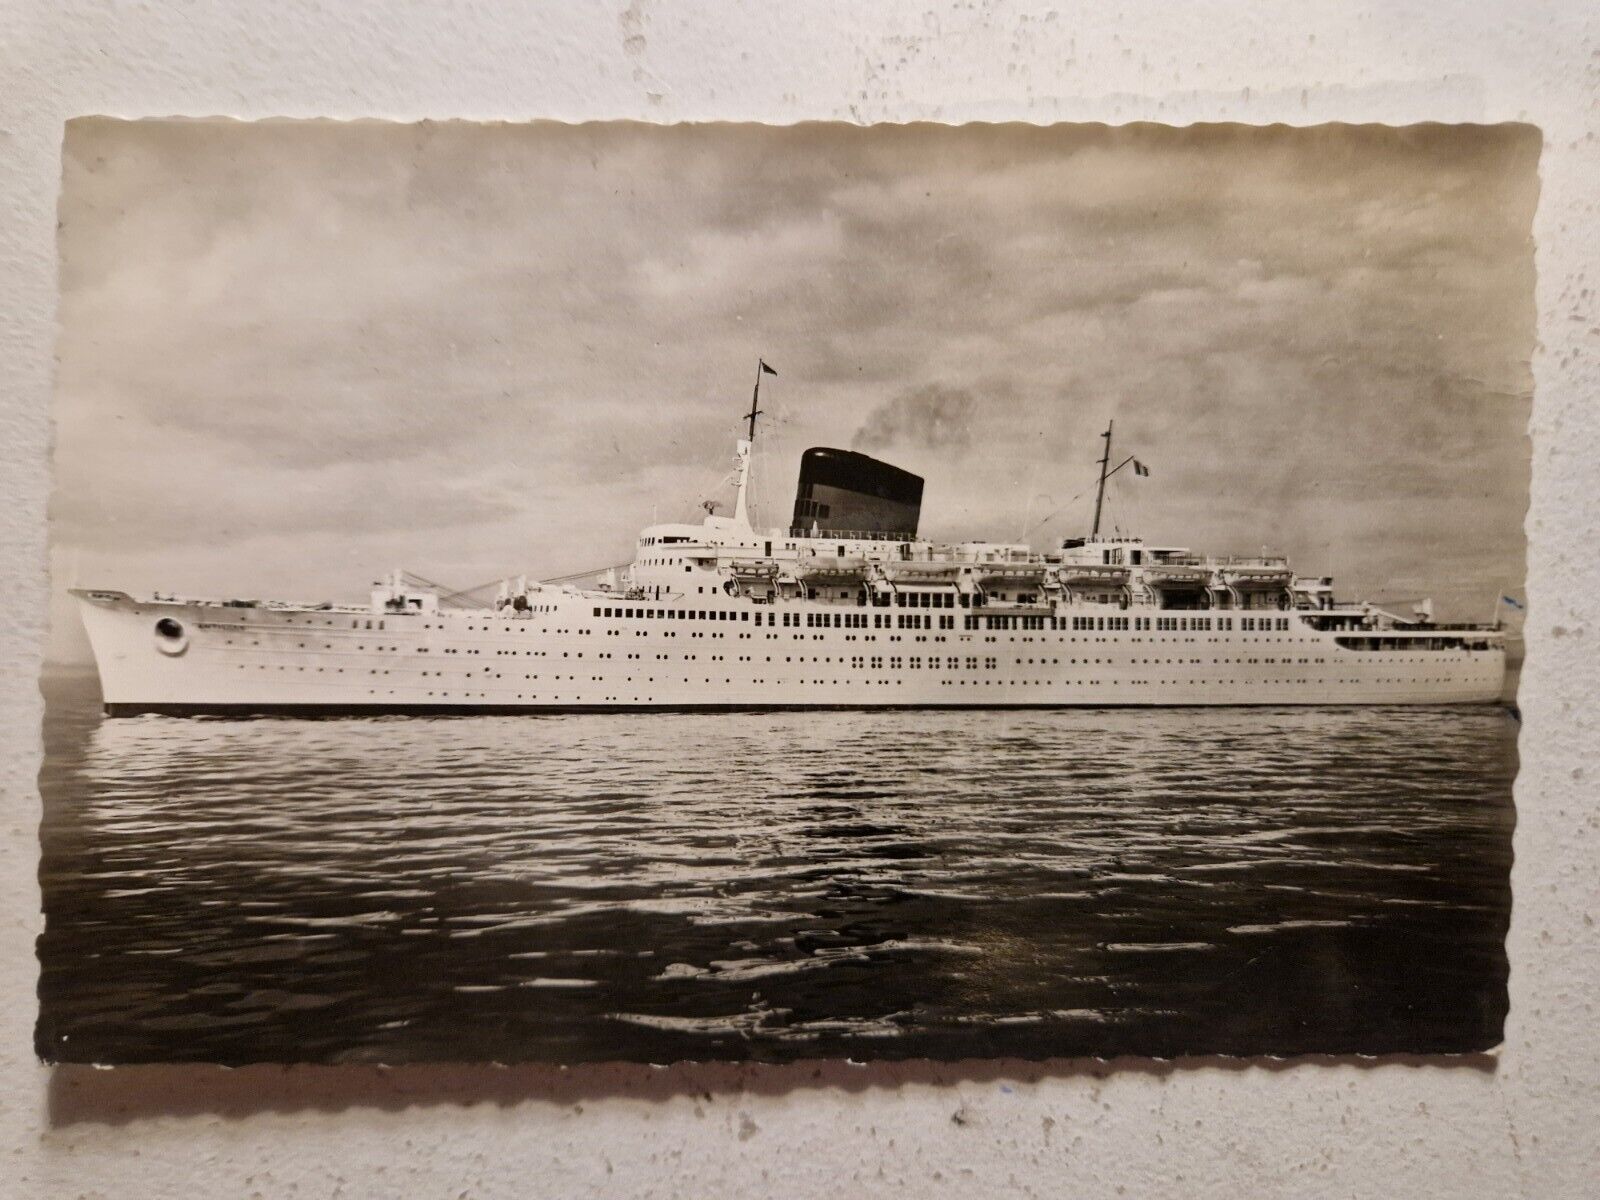 CPA West Indies liner